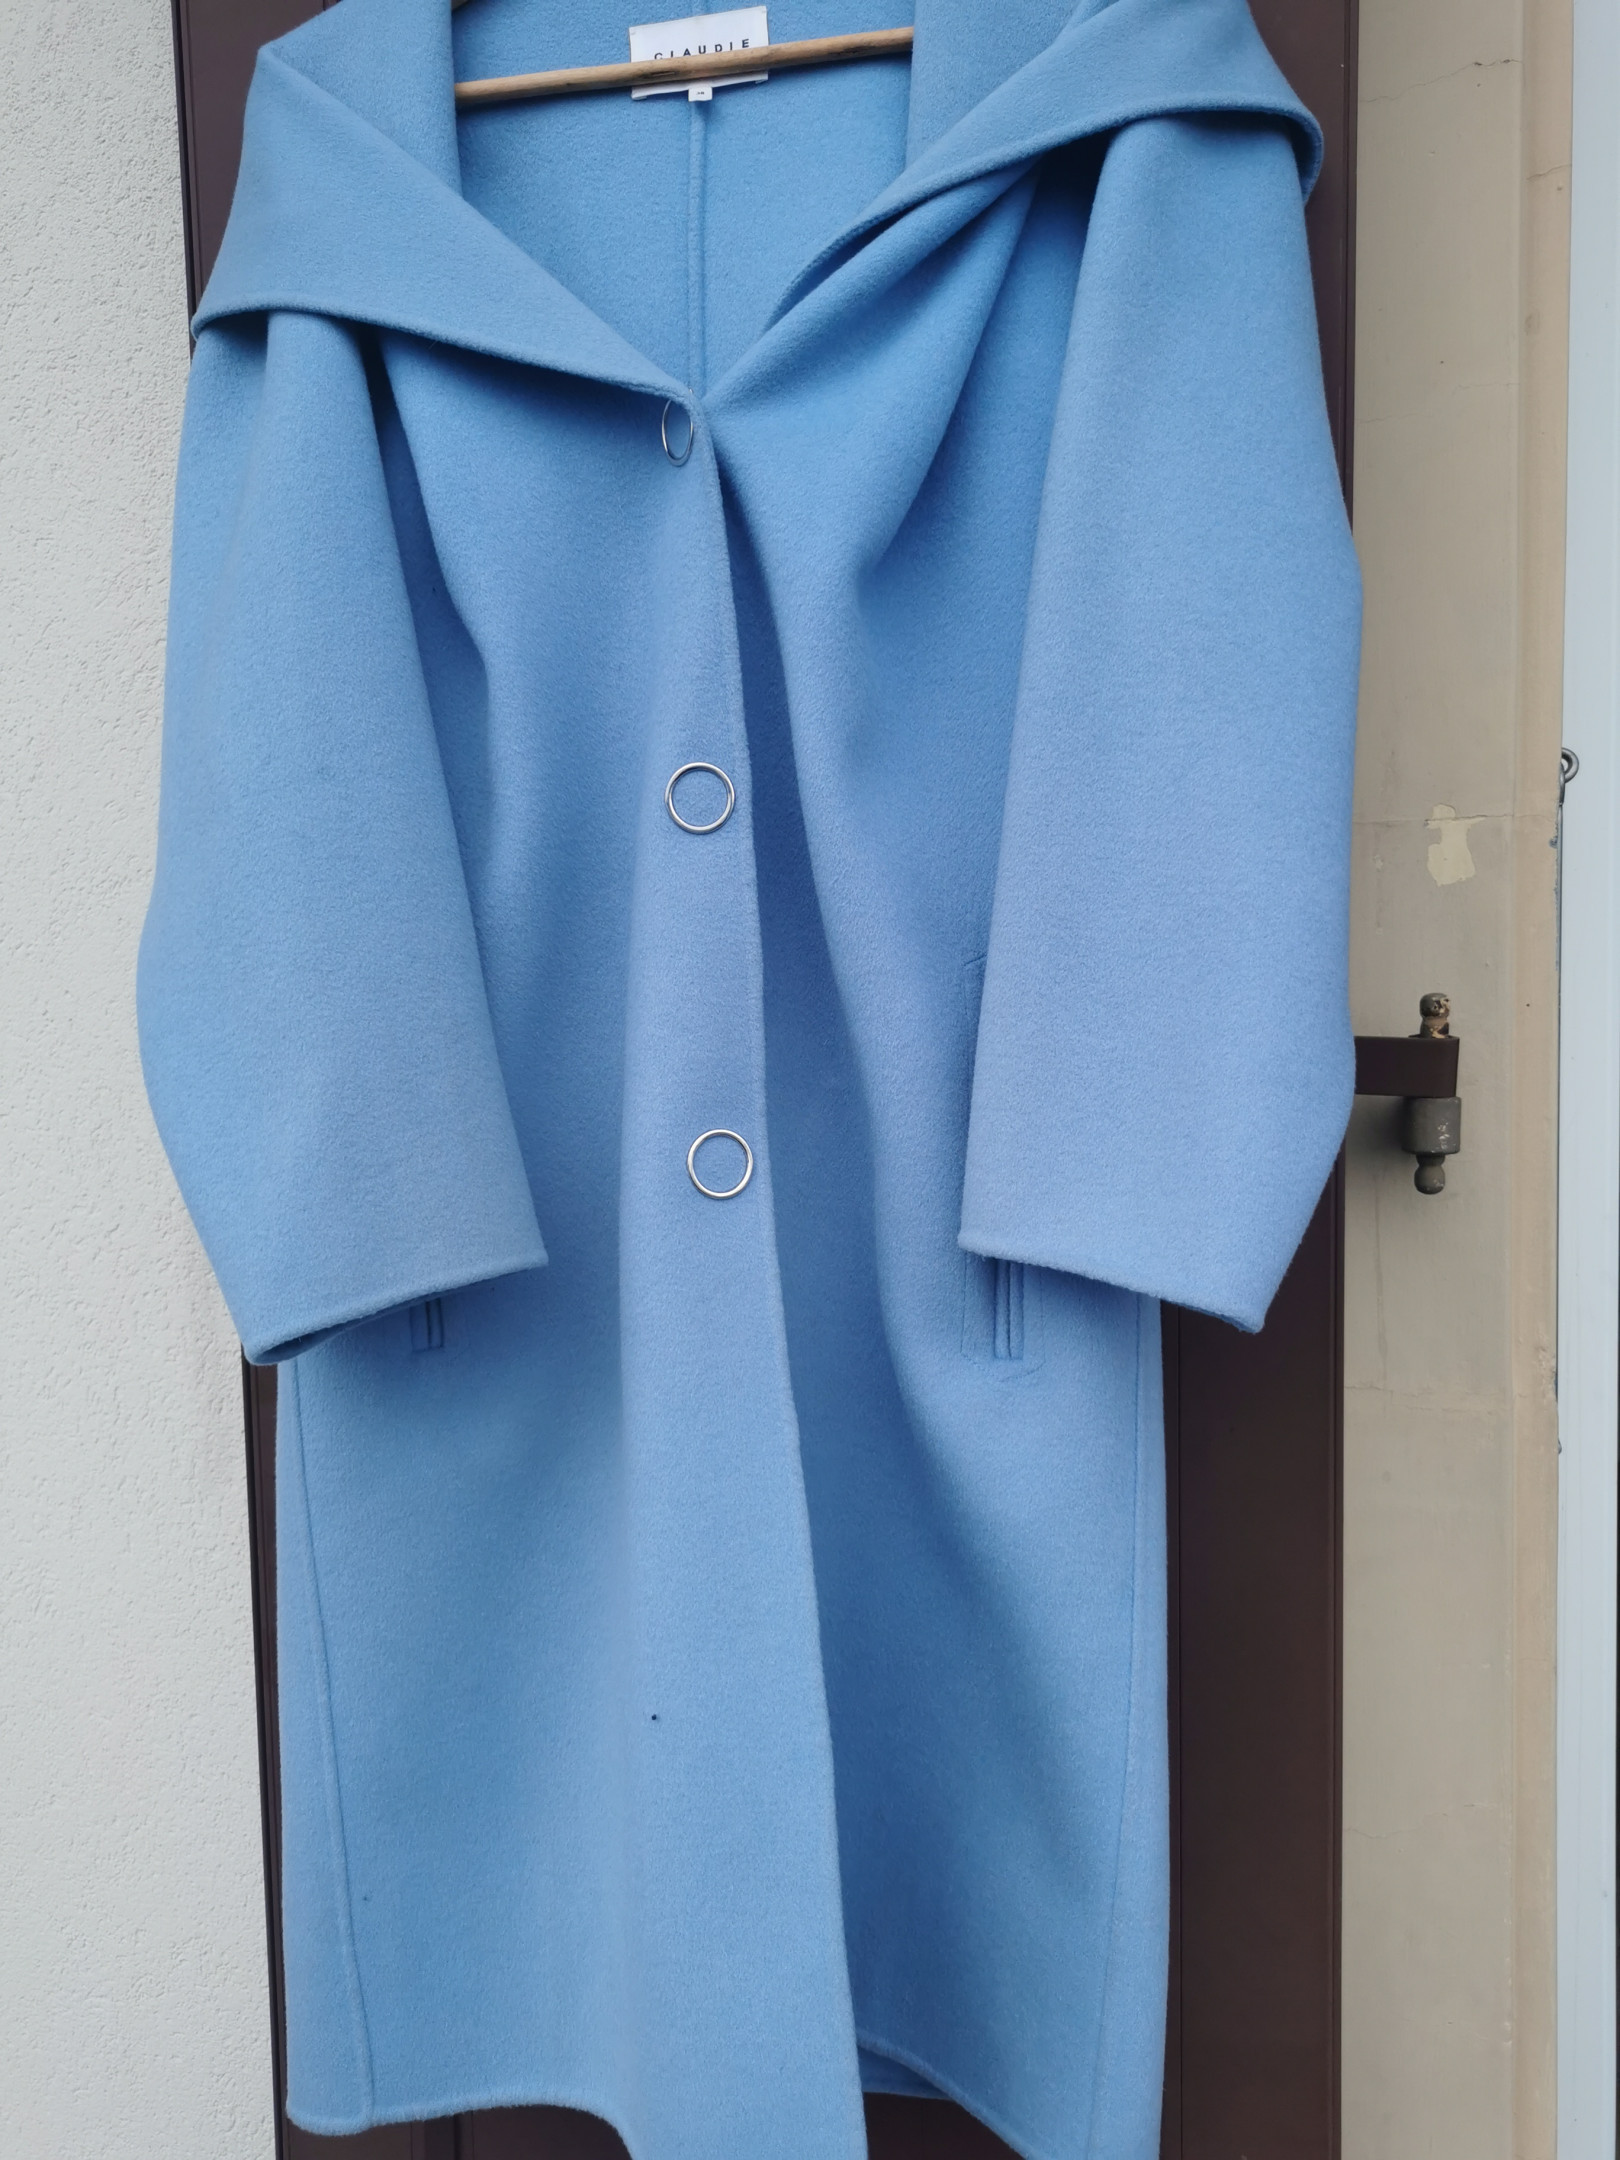 Claudie Pierlot Wool Coat - Magnificent Periwinkle Blue - Size 38